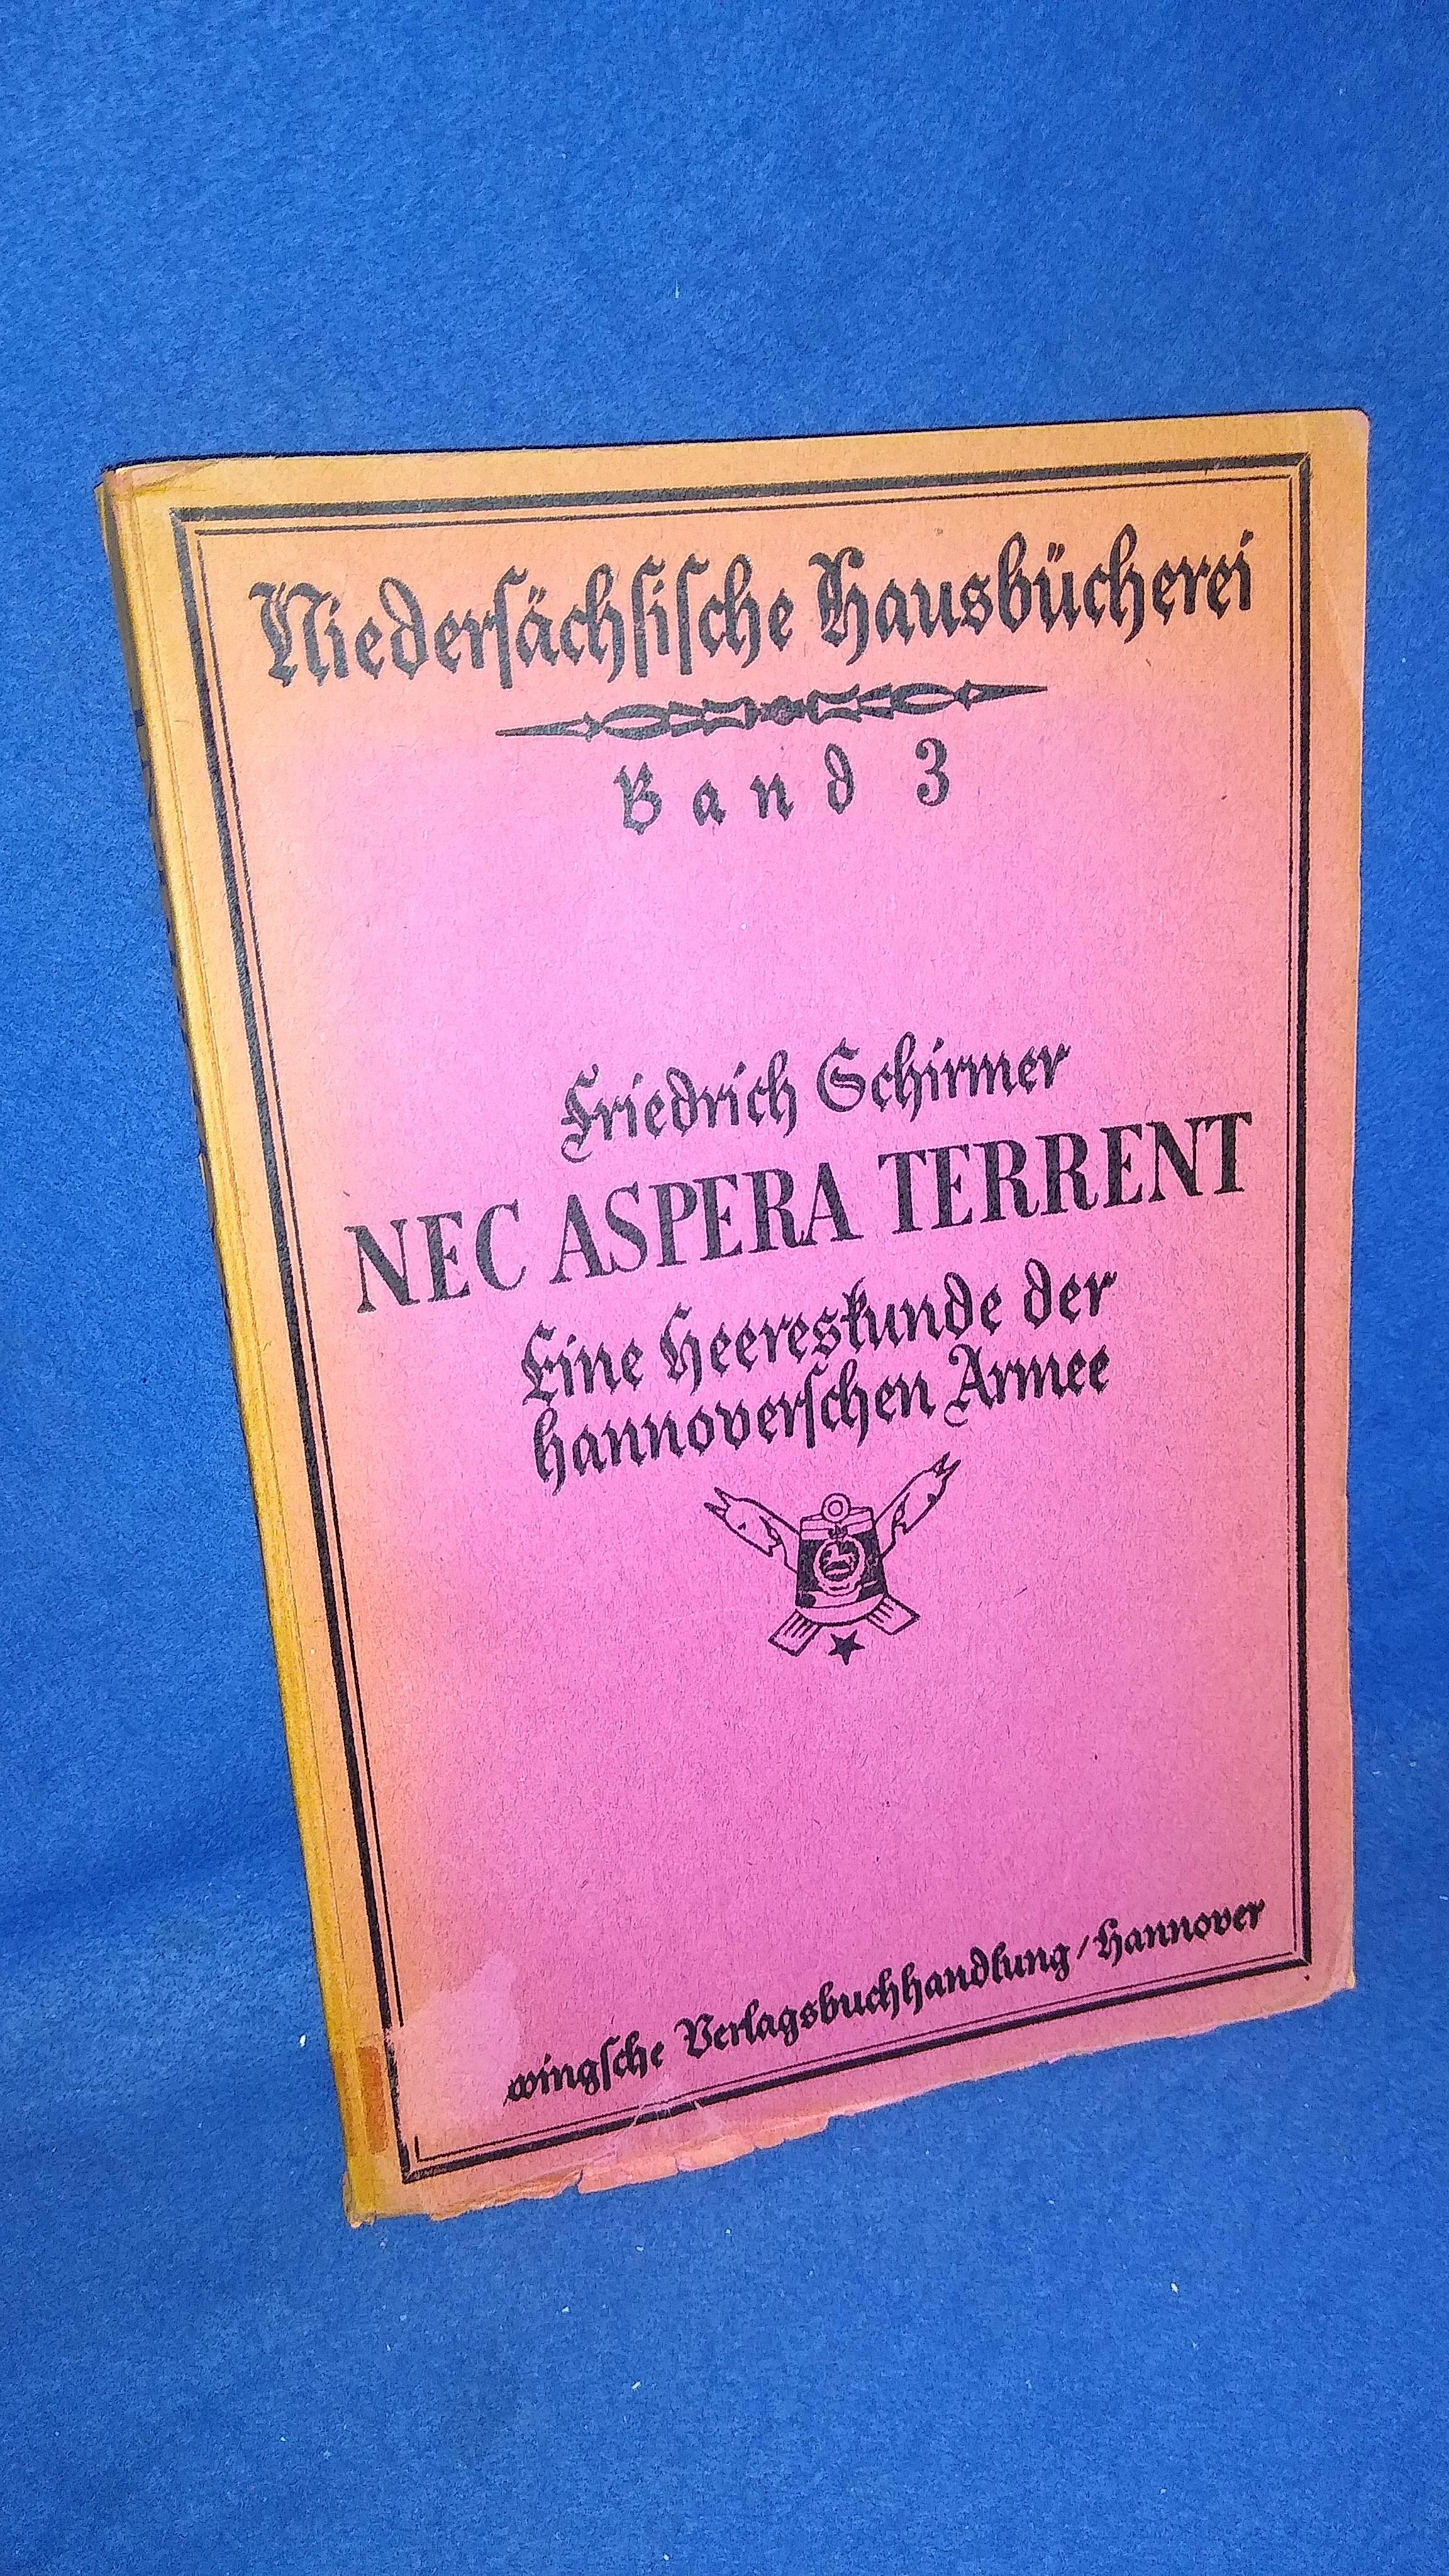 Nec Aspera Terrent - Eine Heereskunde der hannoverschen Armee von 1631 bis 1803. Aus der Reihe: Niedersächsische Hausbücherei Band 3.